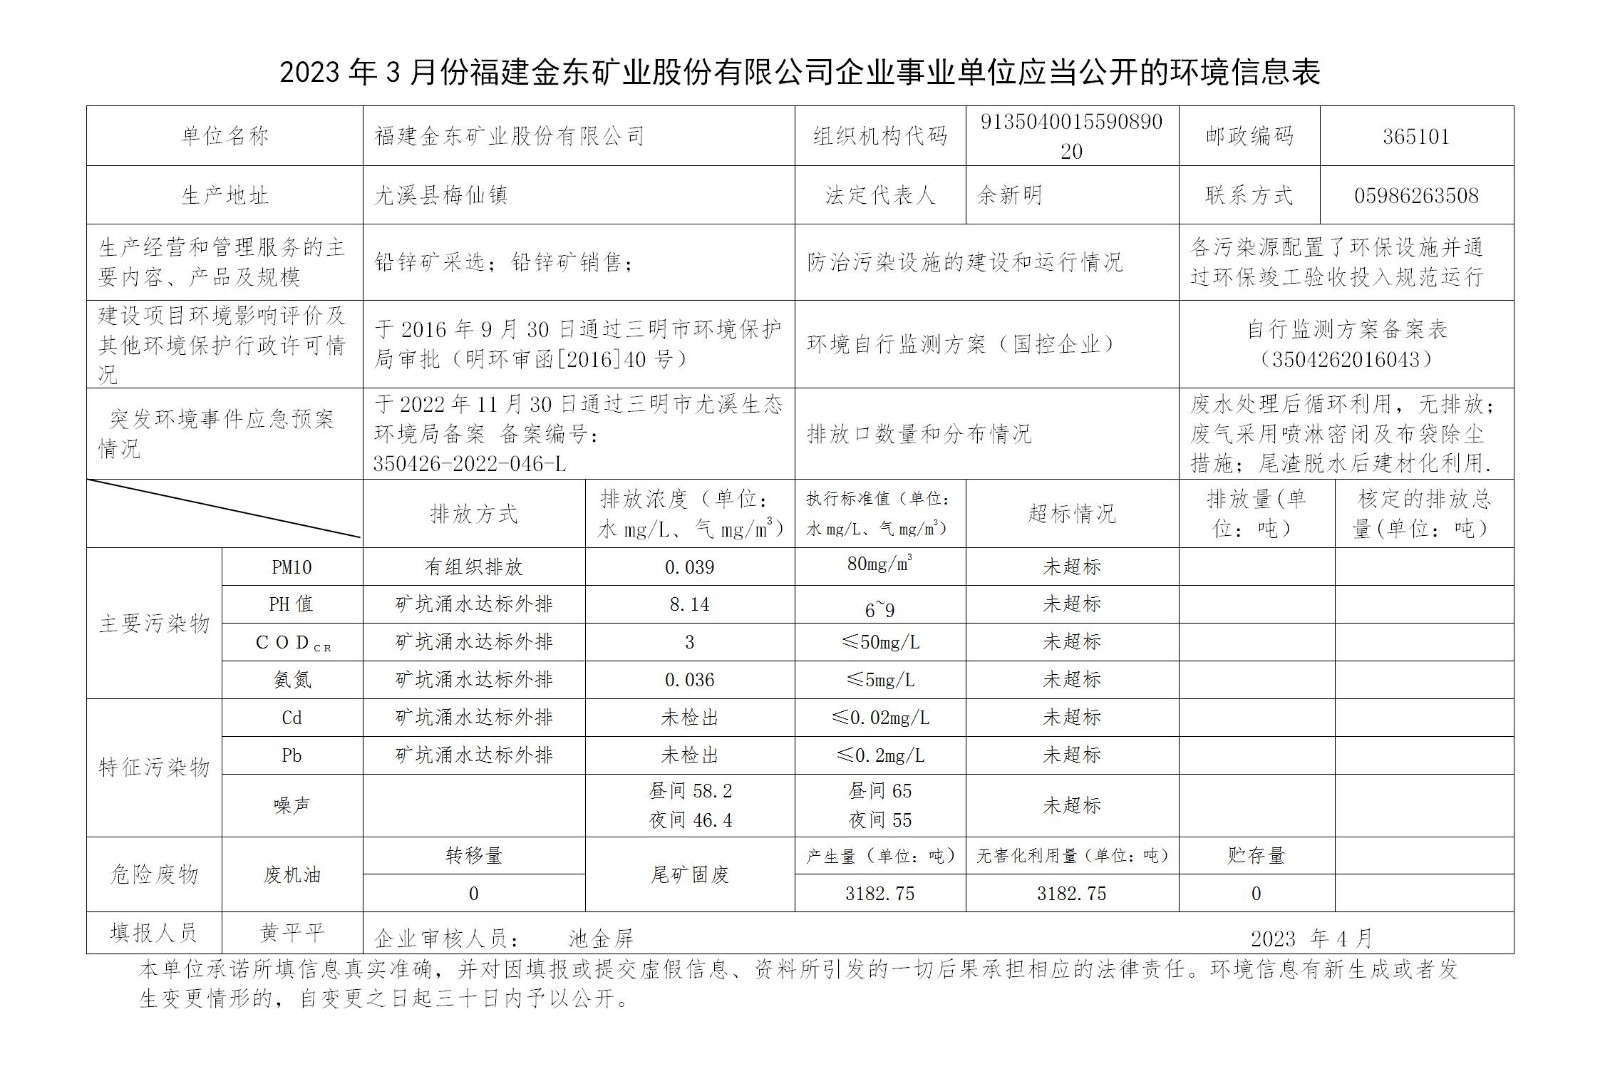 2023年3月份火狐电竞(中国)官方网站企业事业单位应当公开的环境信息表_01.jpg